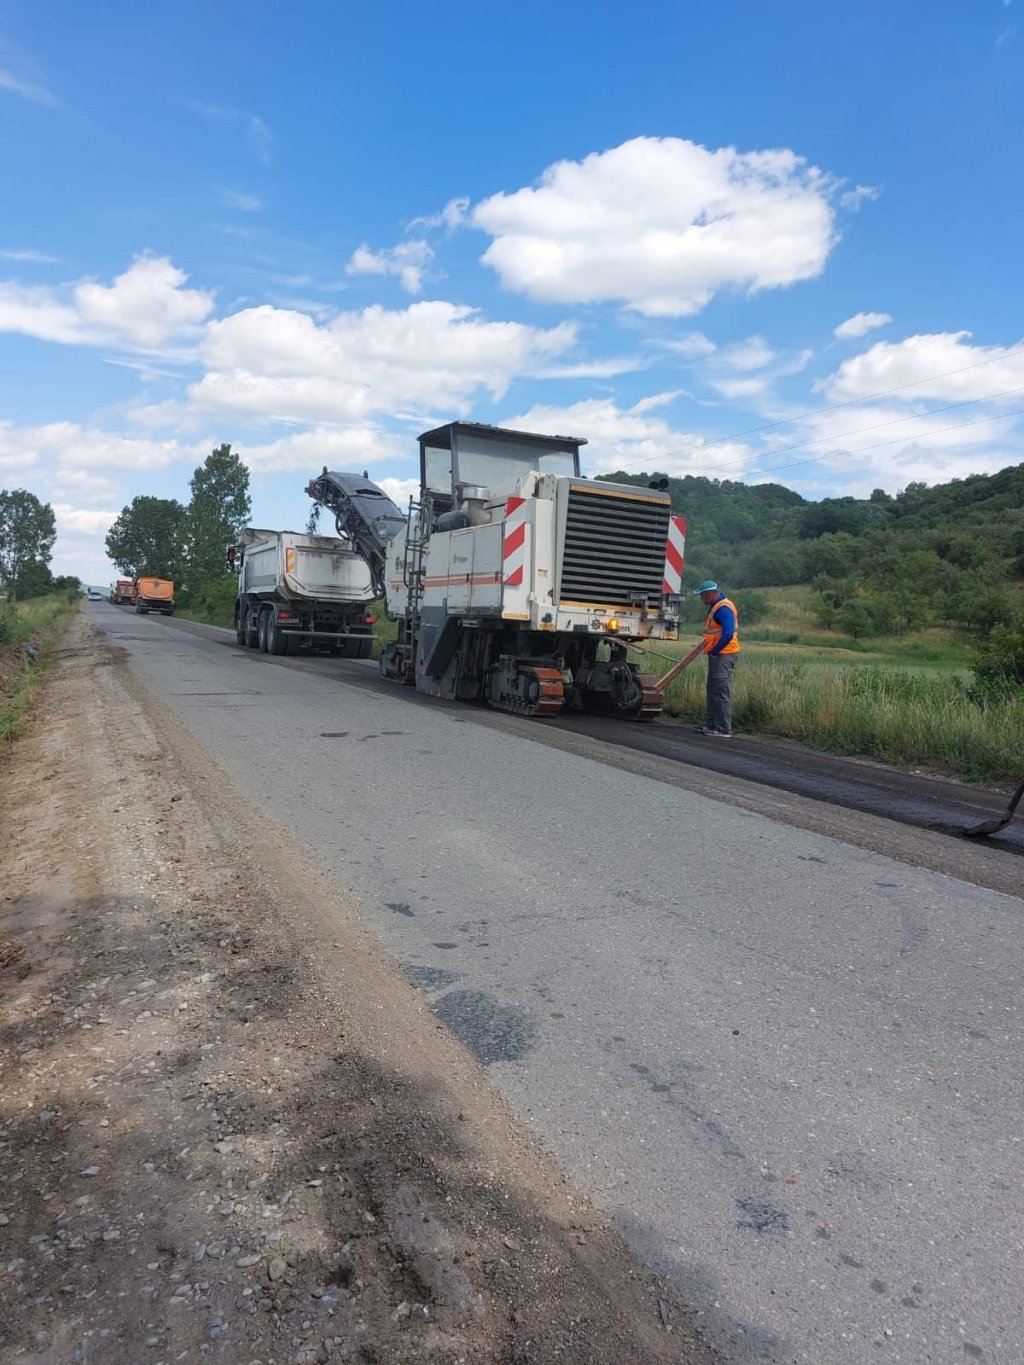 Reparații pe un nou drum județean din Cluj. A fost afectat de traficul greu